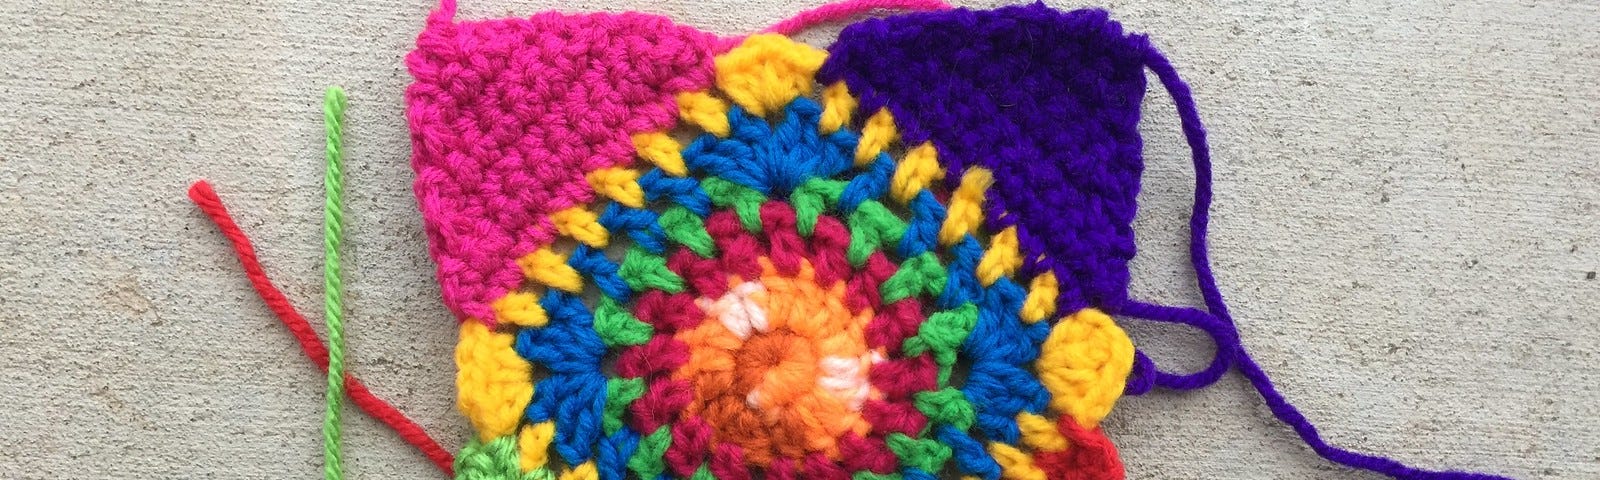 A multicolor crochet granny square for difficult times